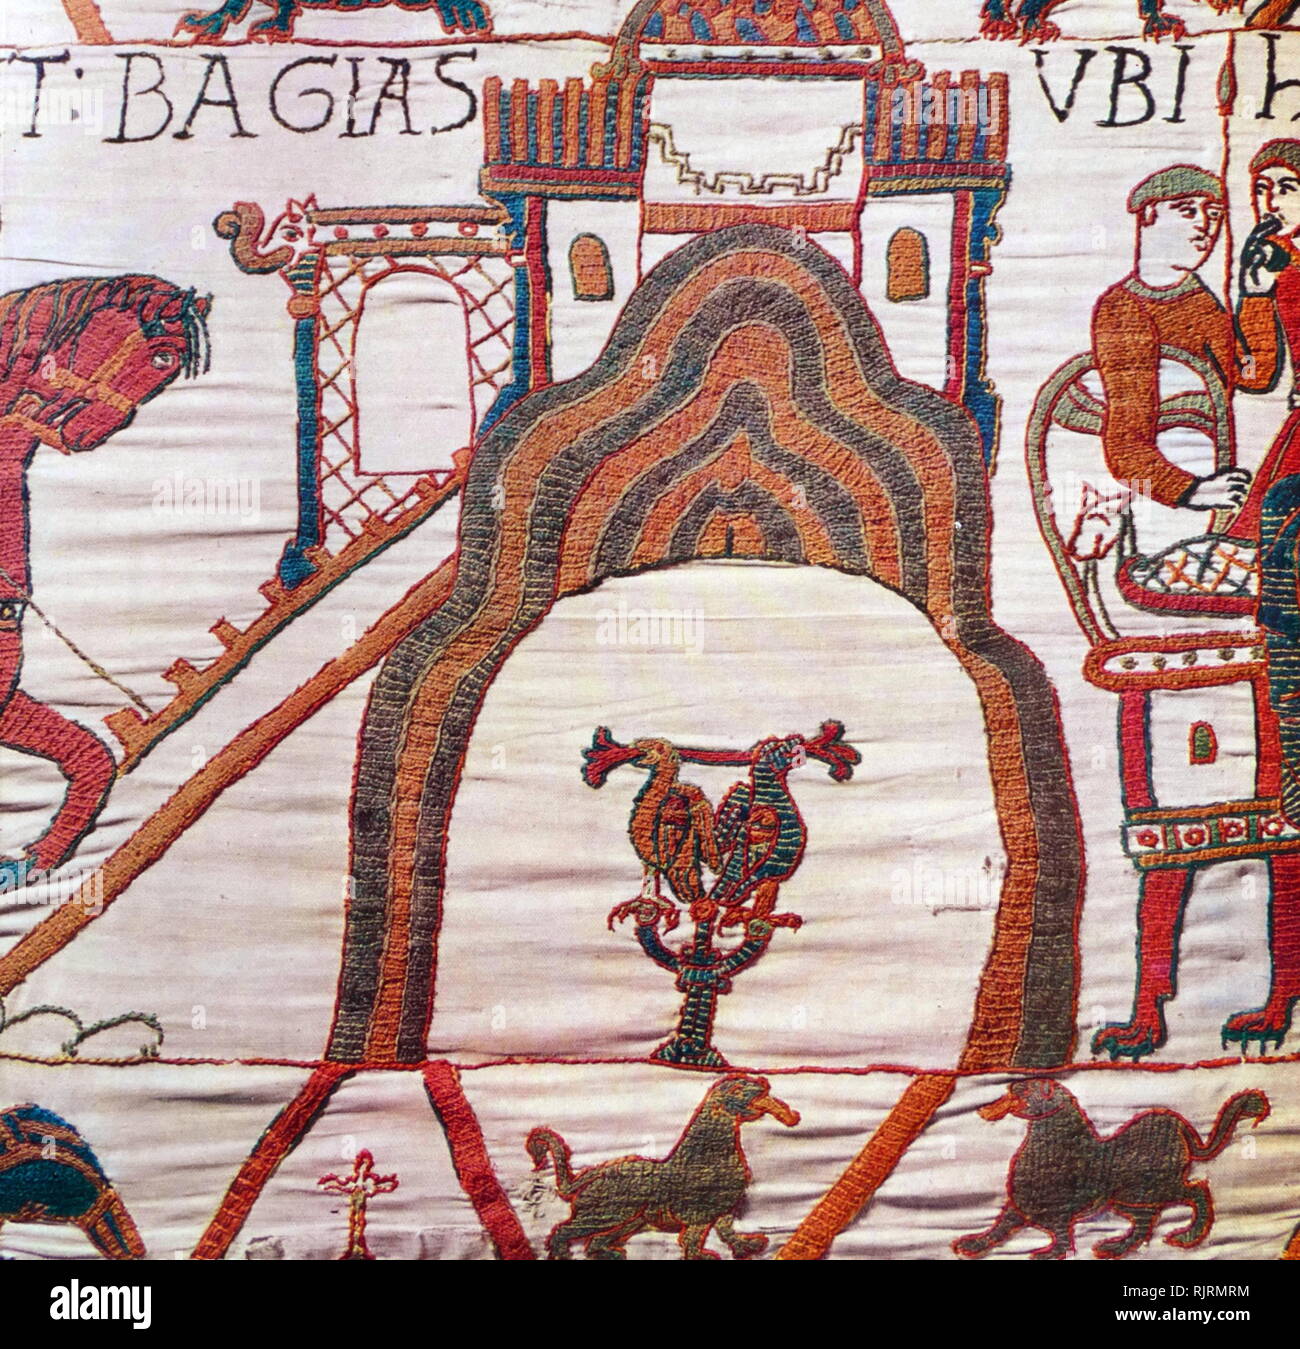 Episode aus dem Teppich von Bayeux, der bestickten Tuch fast 70 Meter (230 ft) lang, die die Ereignisse, die zu der Normannischen Eroberung Englands zeigt, die ihren Höhepunkt in der Schlacht von Hastings, in 1066. Es ist bis heute auf das 11. Jahrhundert dachte, nur wenige Jahre nach der Schlacht. Erzählt wird die Geschichte aus der Sicht der Normannen erobern. Stockfoto